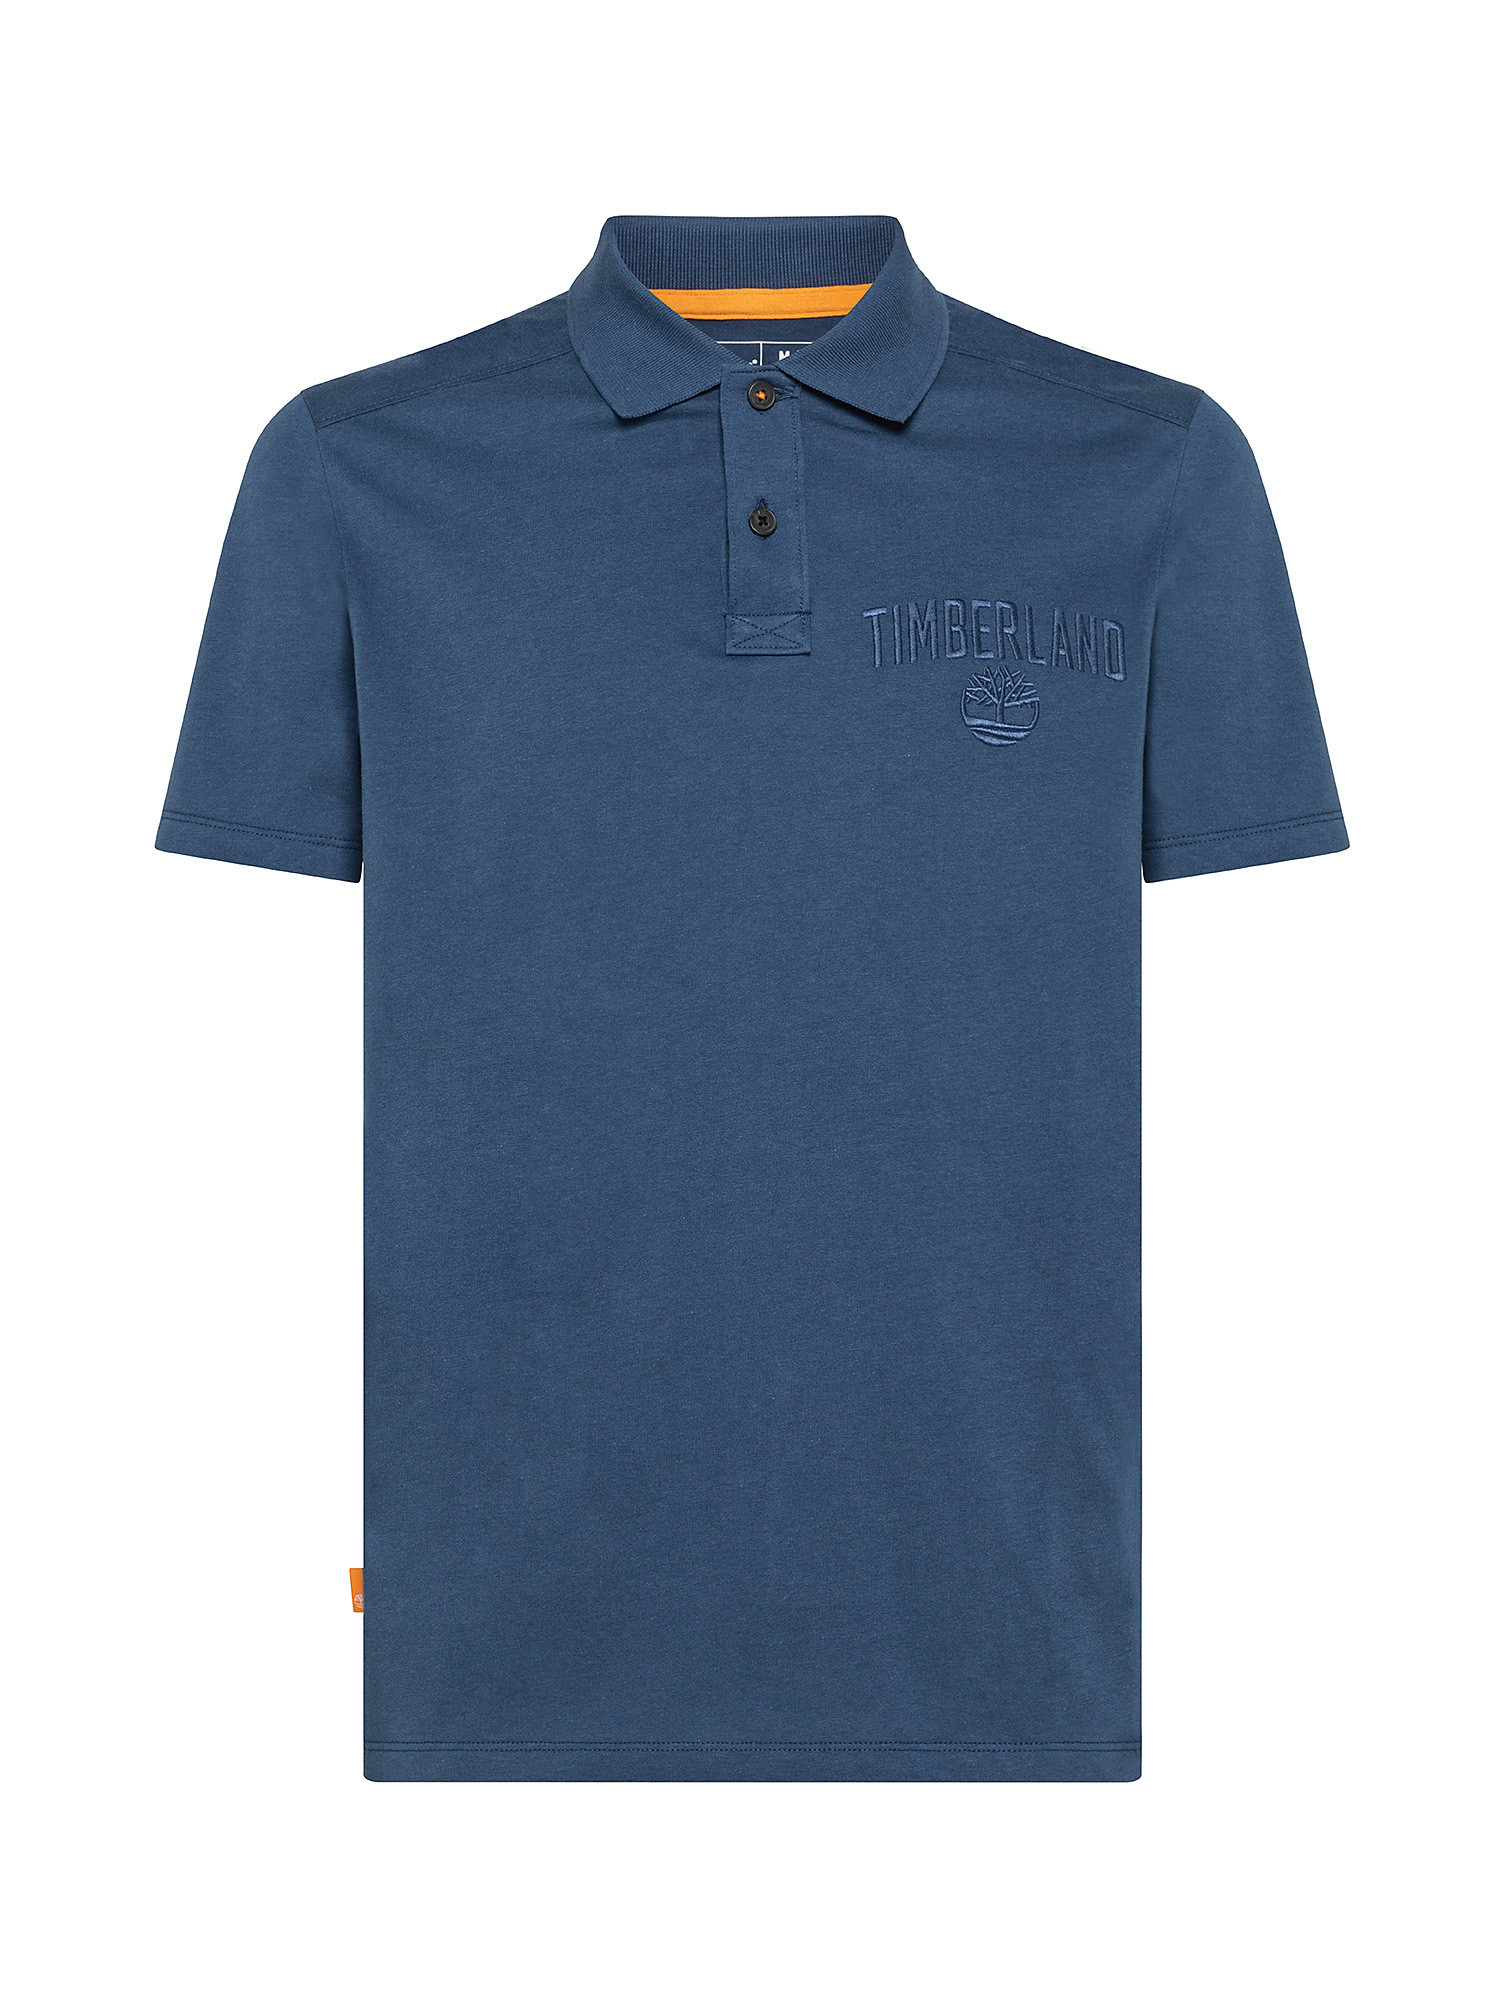 Men's Outdoor Heritage EK + Polo Shirt, Blue, large image number 0